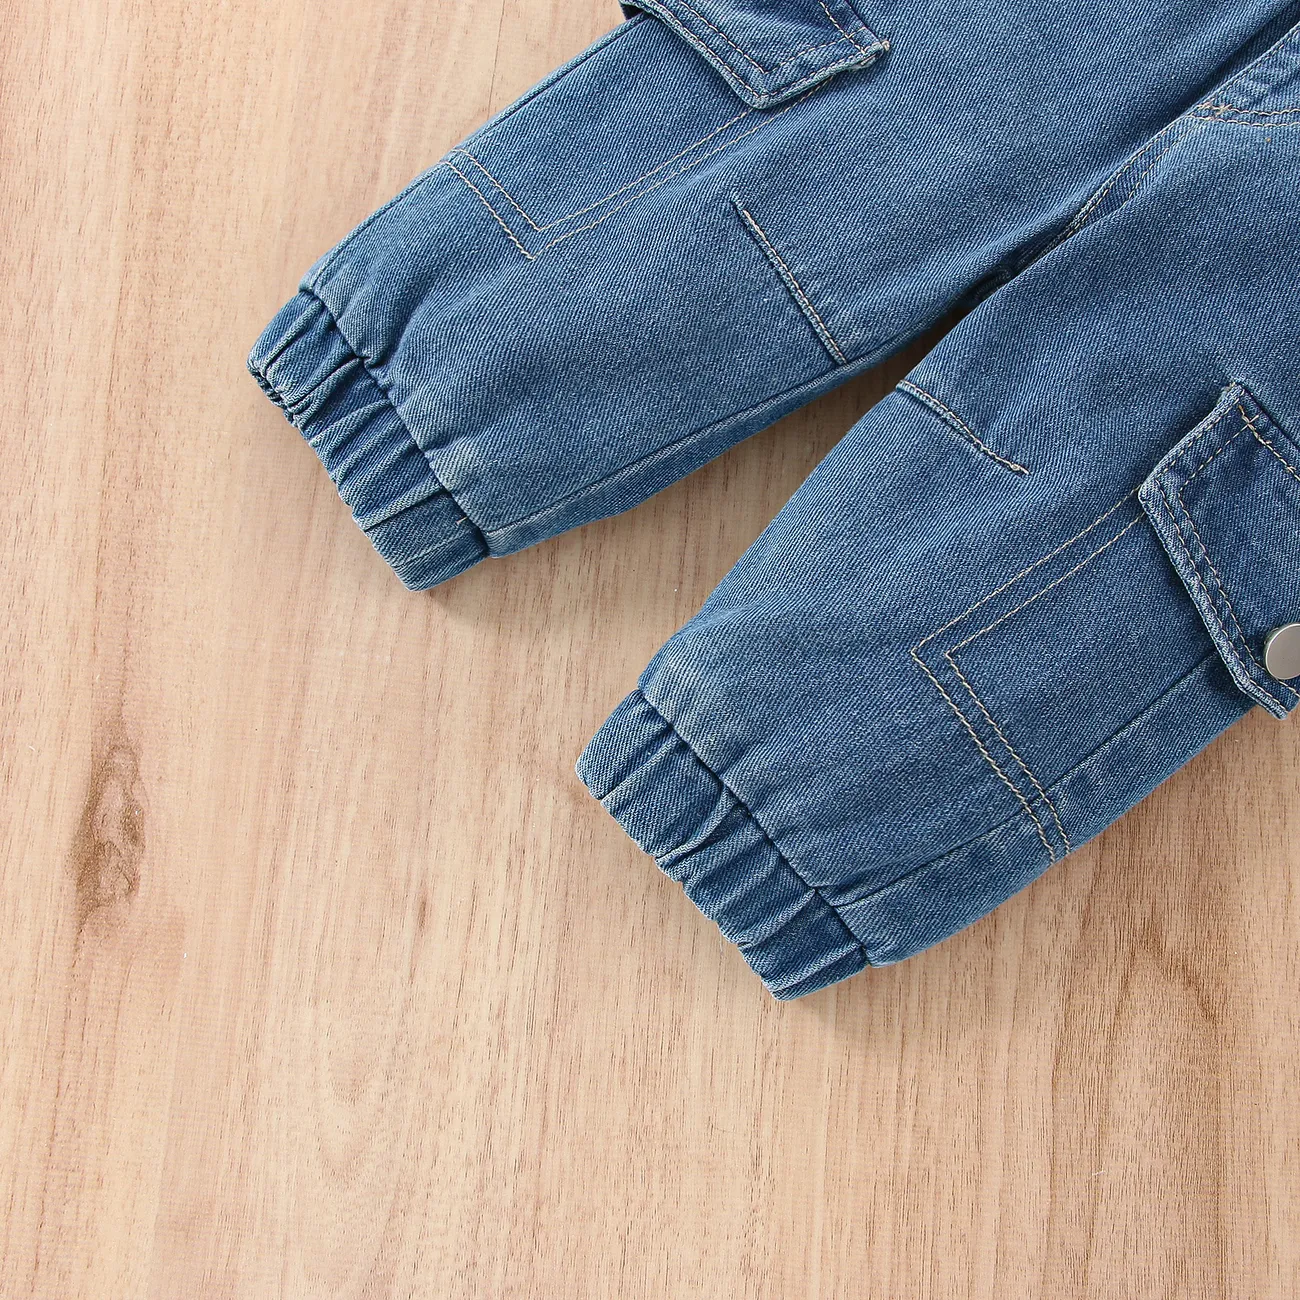 Bebê / Criança Menina / Menino Infantil Solida Cor Casaco/Jeans/Suéter/Sapatos Azul big image 1